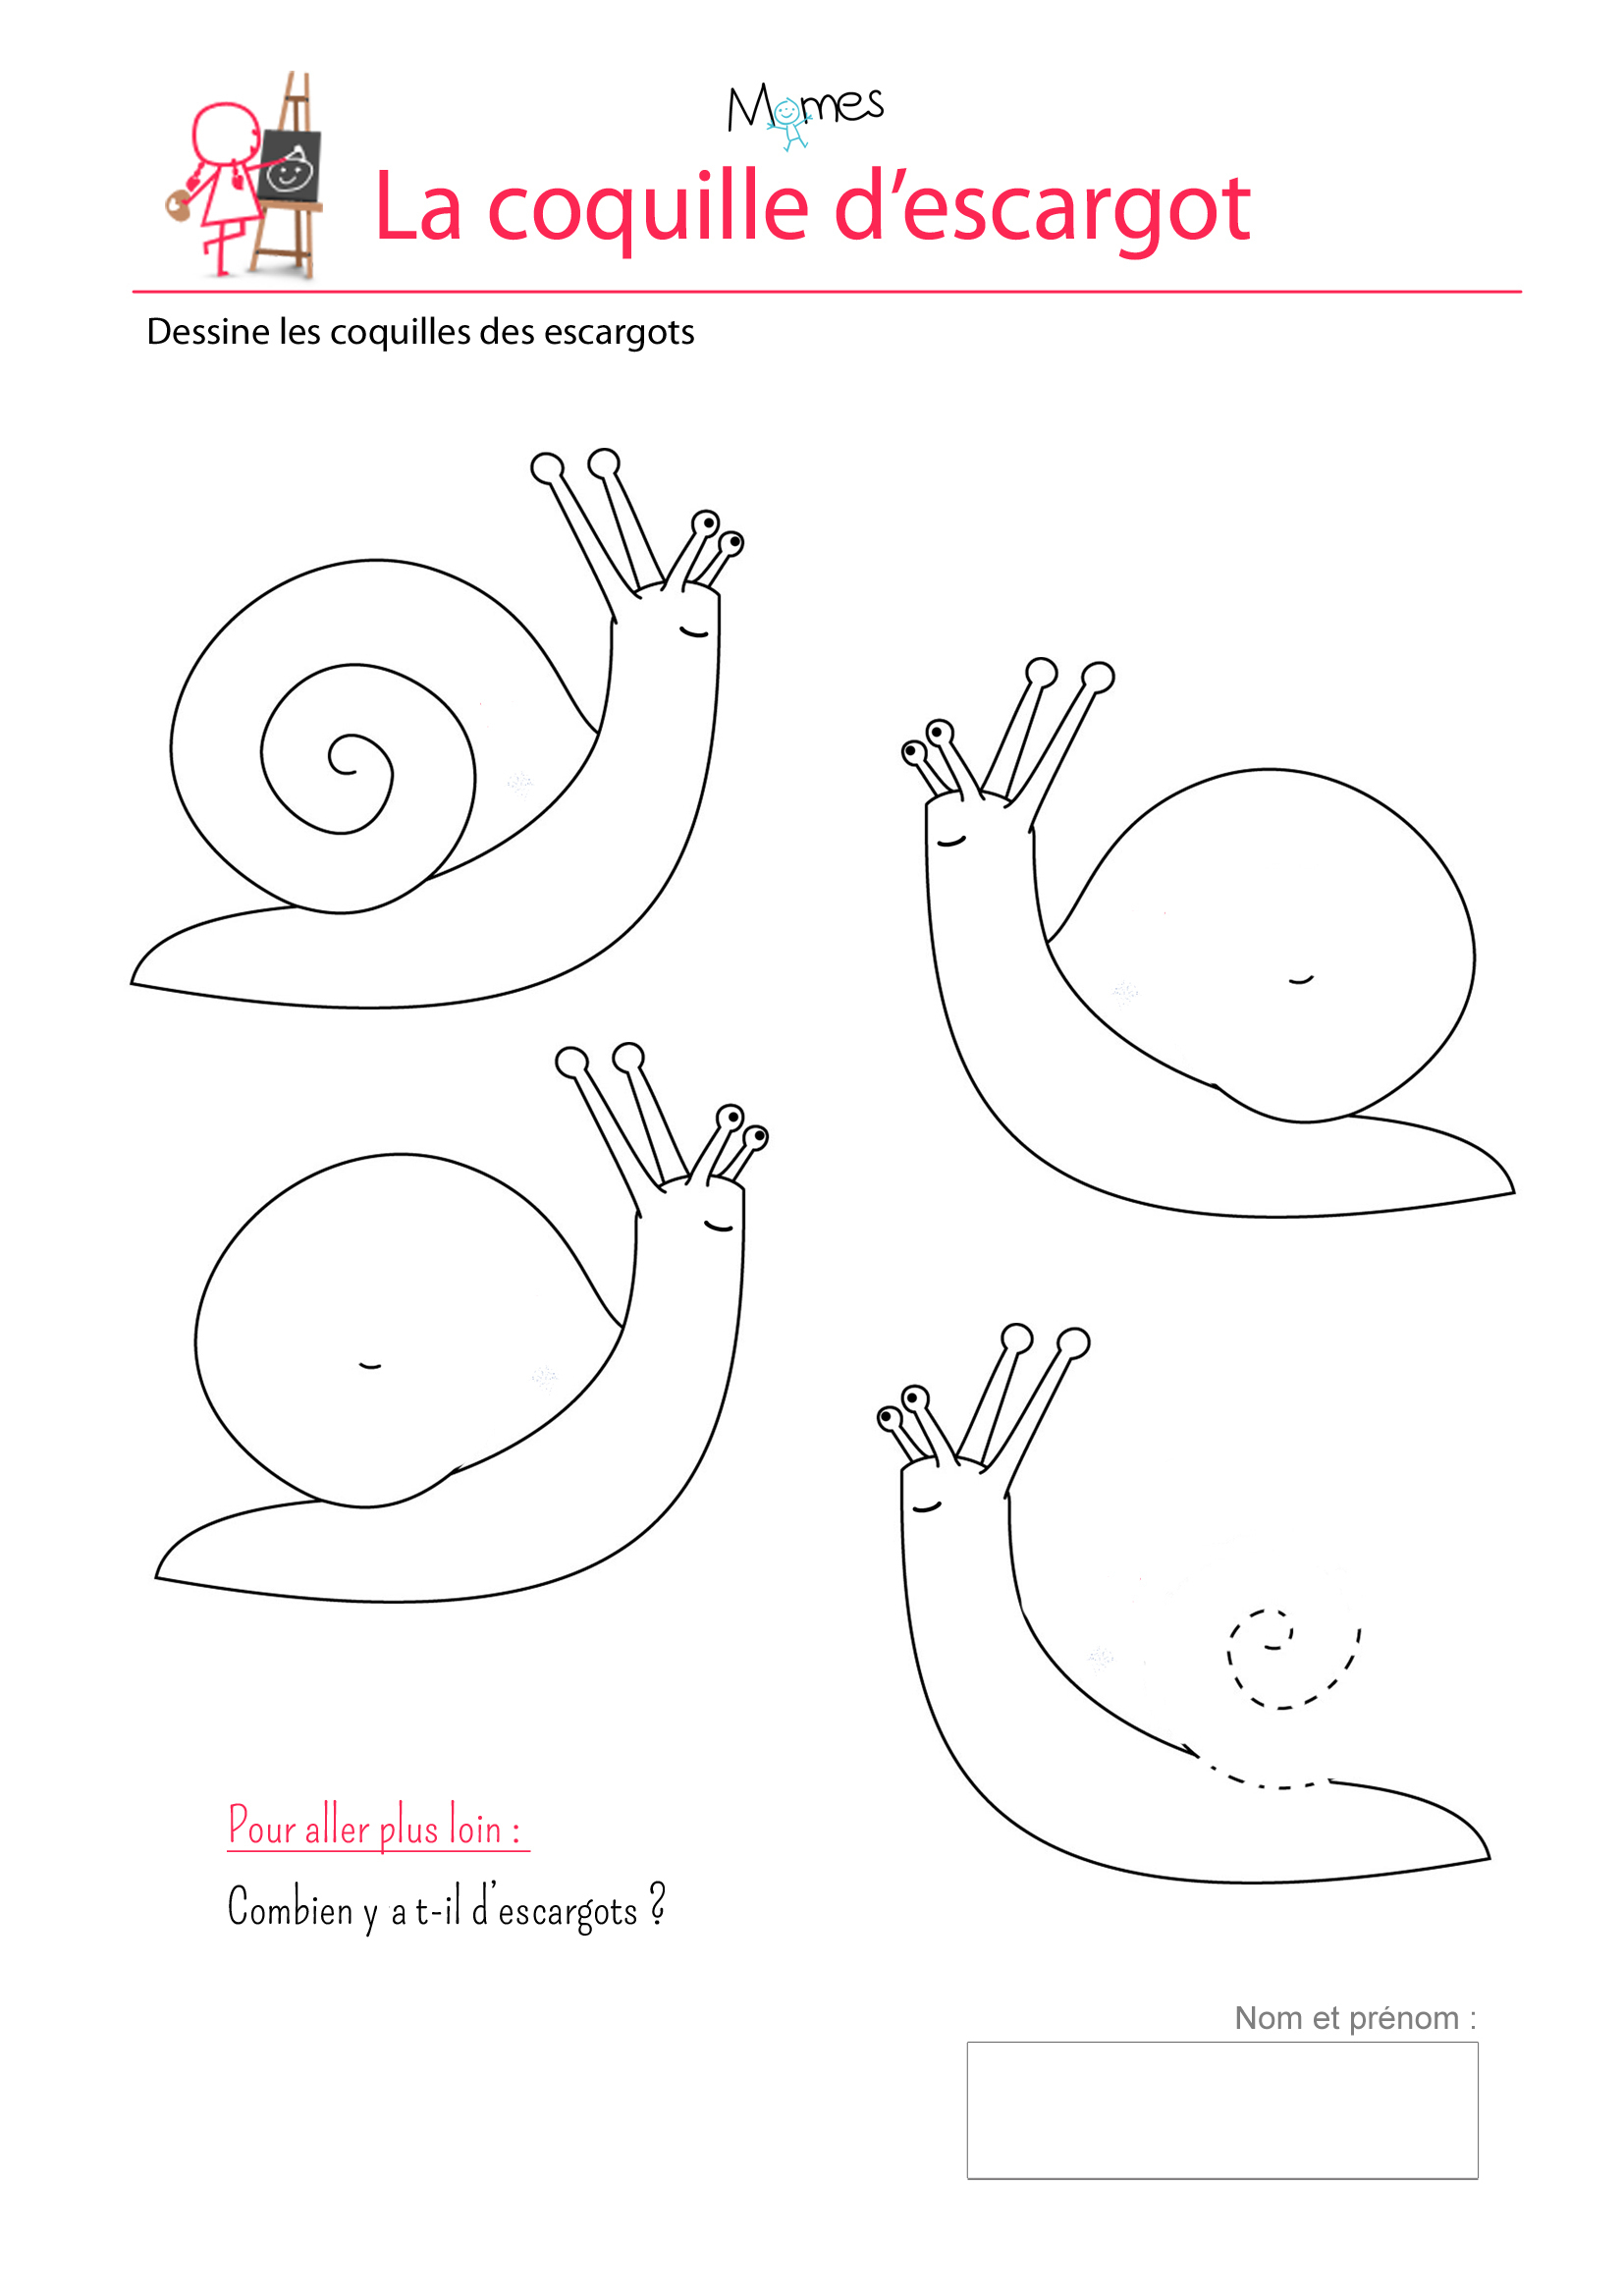 Les Coquilles D&amp;#039;escargots - Exercice Sur Les Spirales destiné Exercice De Maternelle A Imprimer Gratuit 